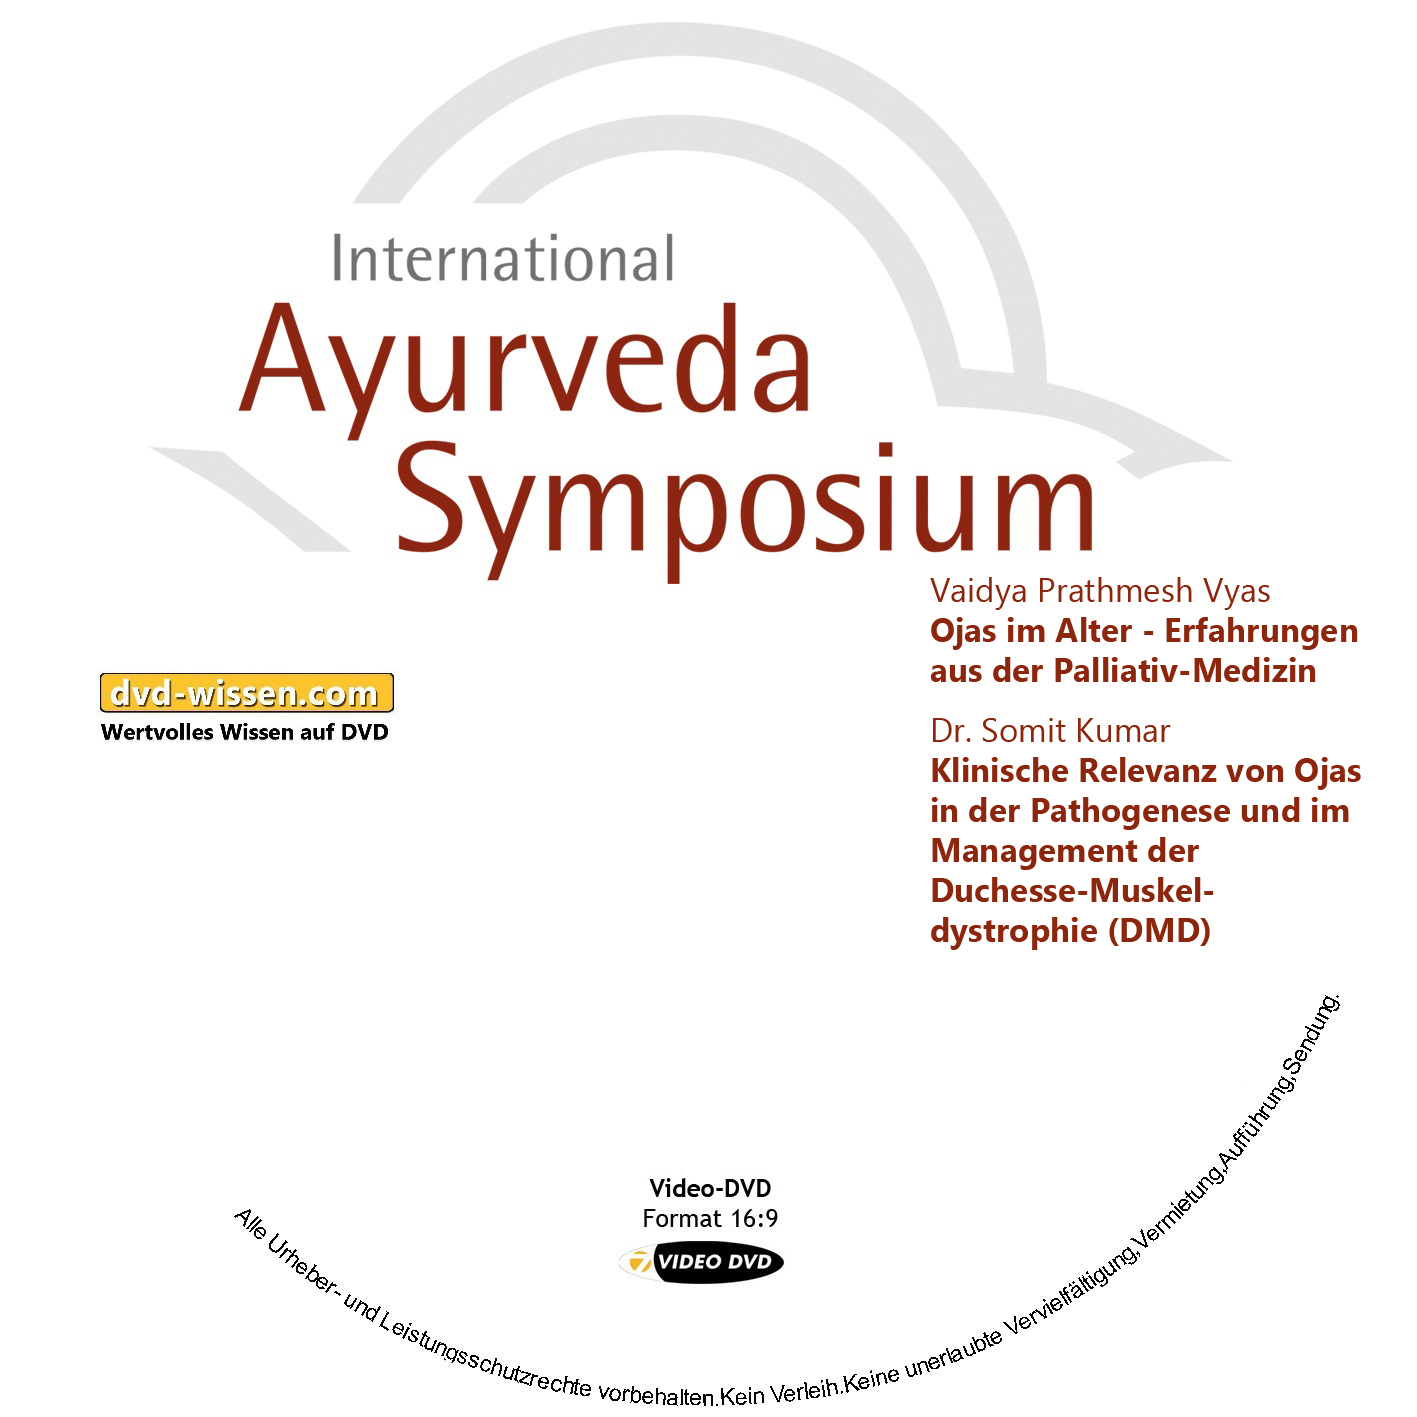 Vaidya Prathmesh Vyas / Dr. Somit Kumar: Ojas im Alter - Erfahrungen aus der Palliativ-Medizin / Klinische Relevanz von Ojas in der Pathogenese und im Management der Duchenne Muskeldystrophie (DMD)